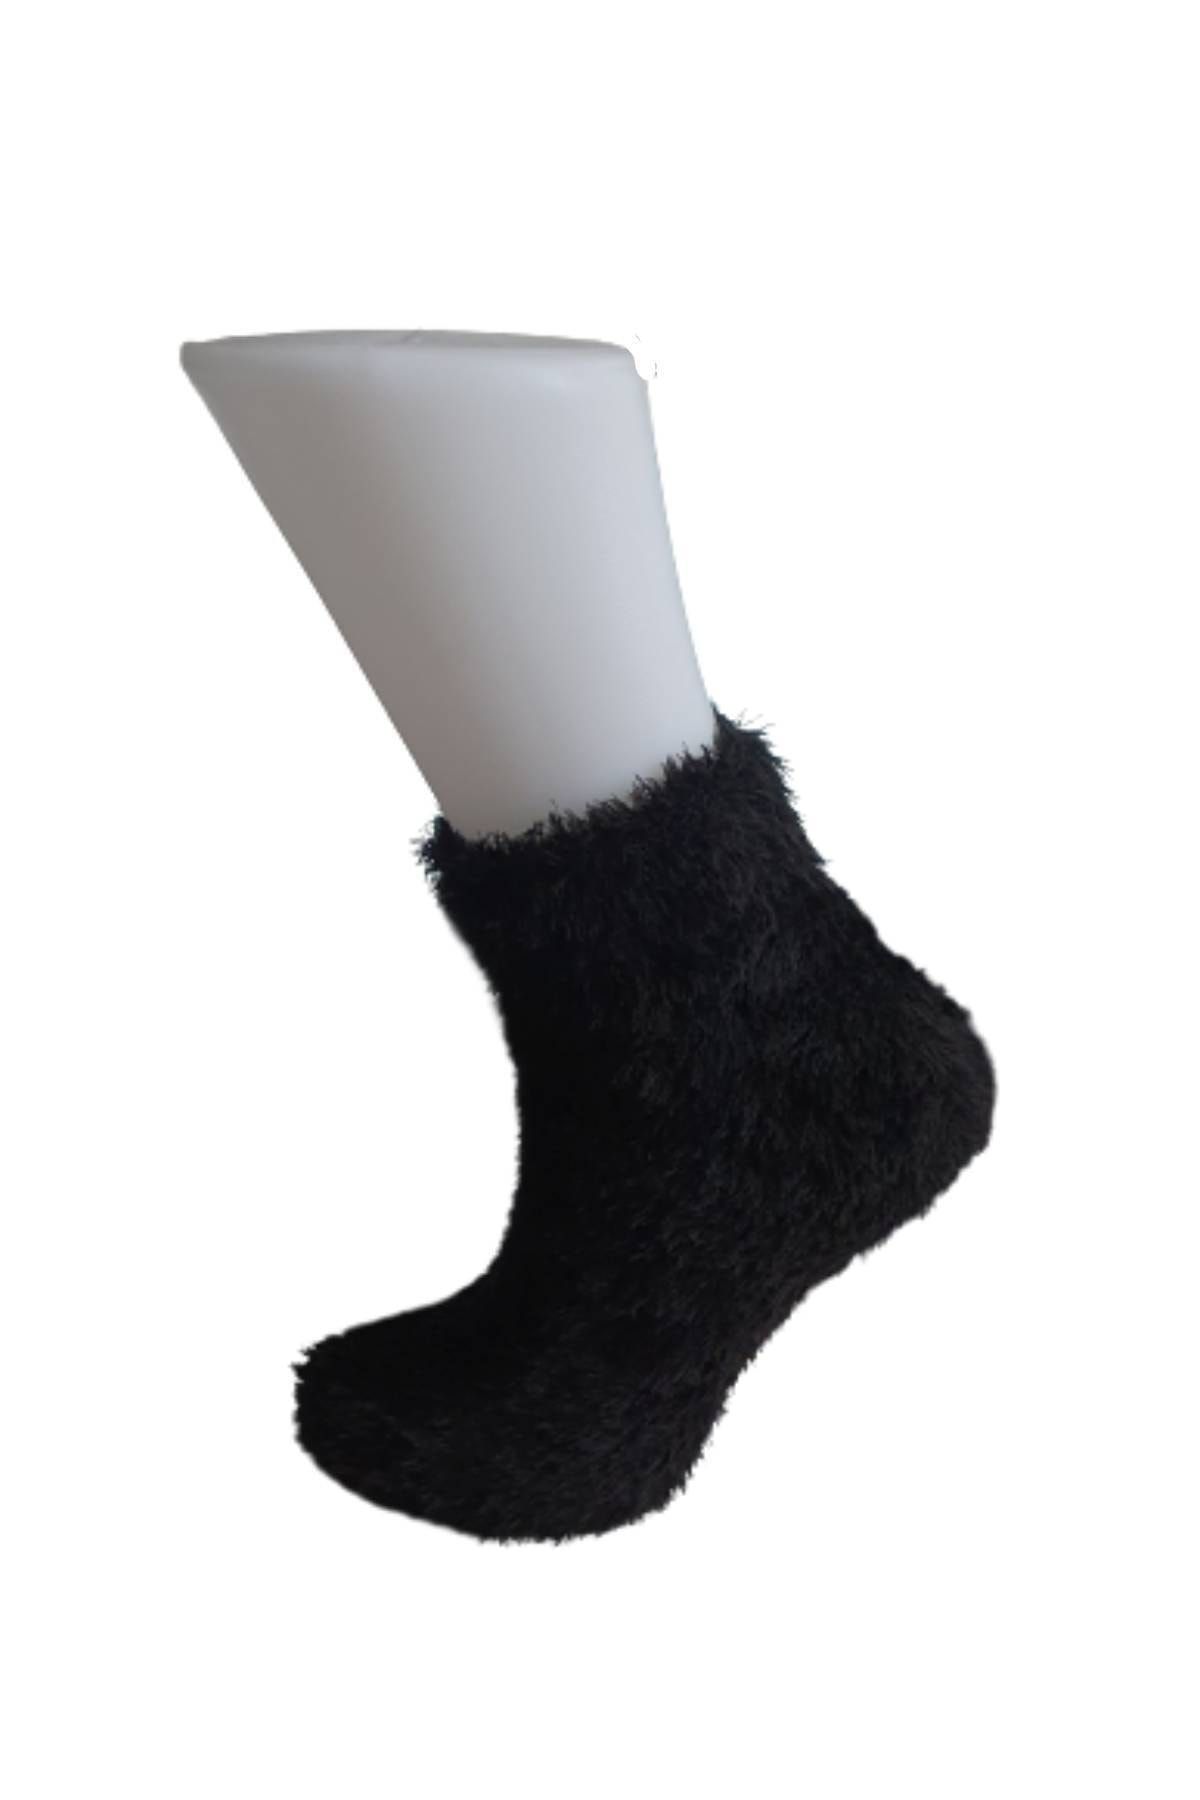 EDWOL Kadınj Tüylü Sıcak Tutan Çorap Siyah